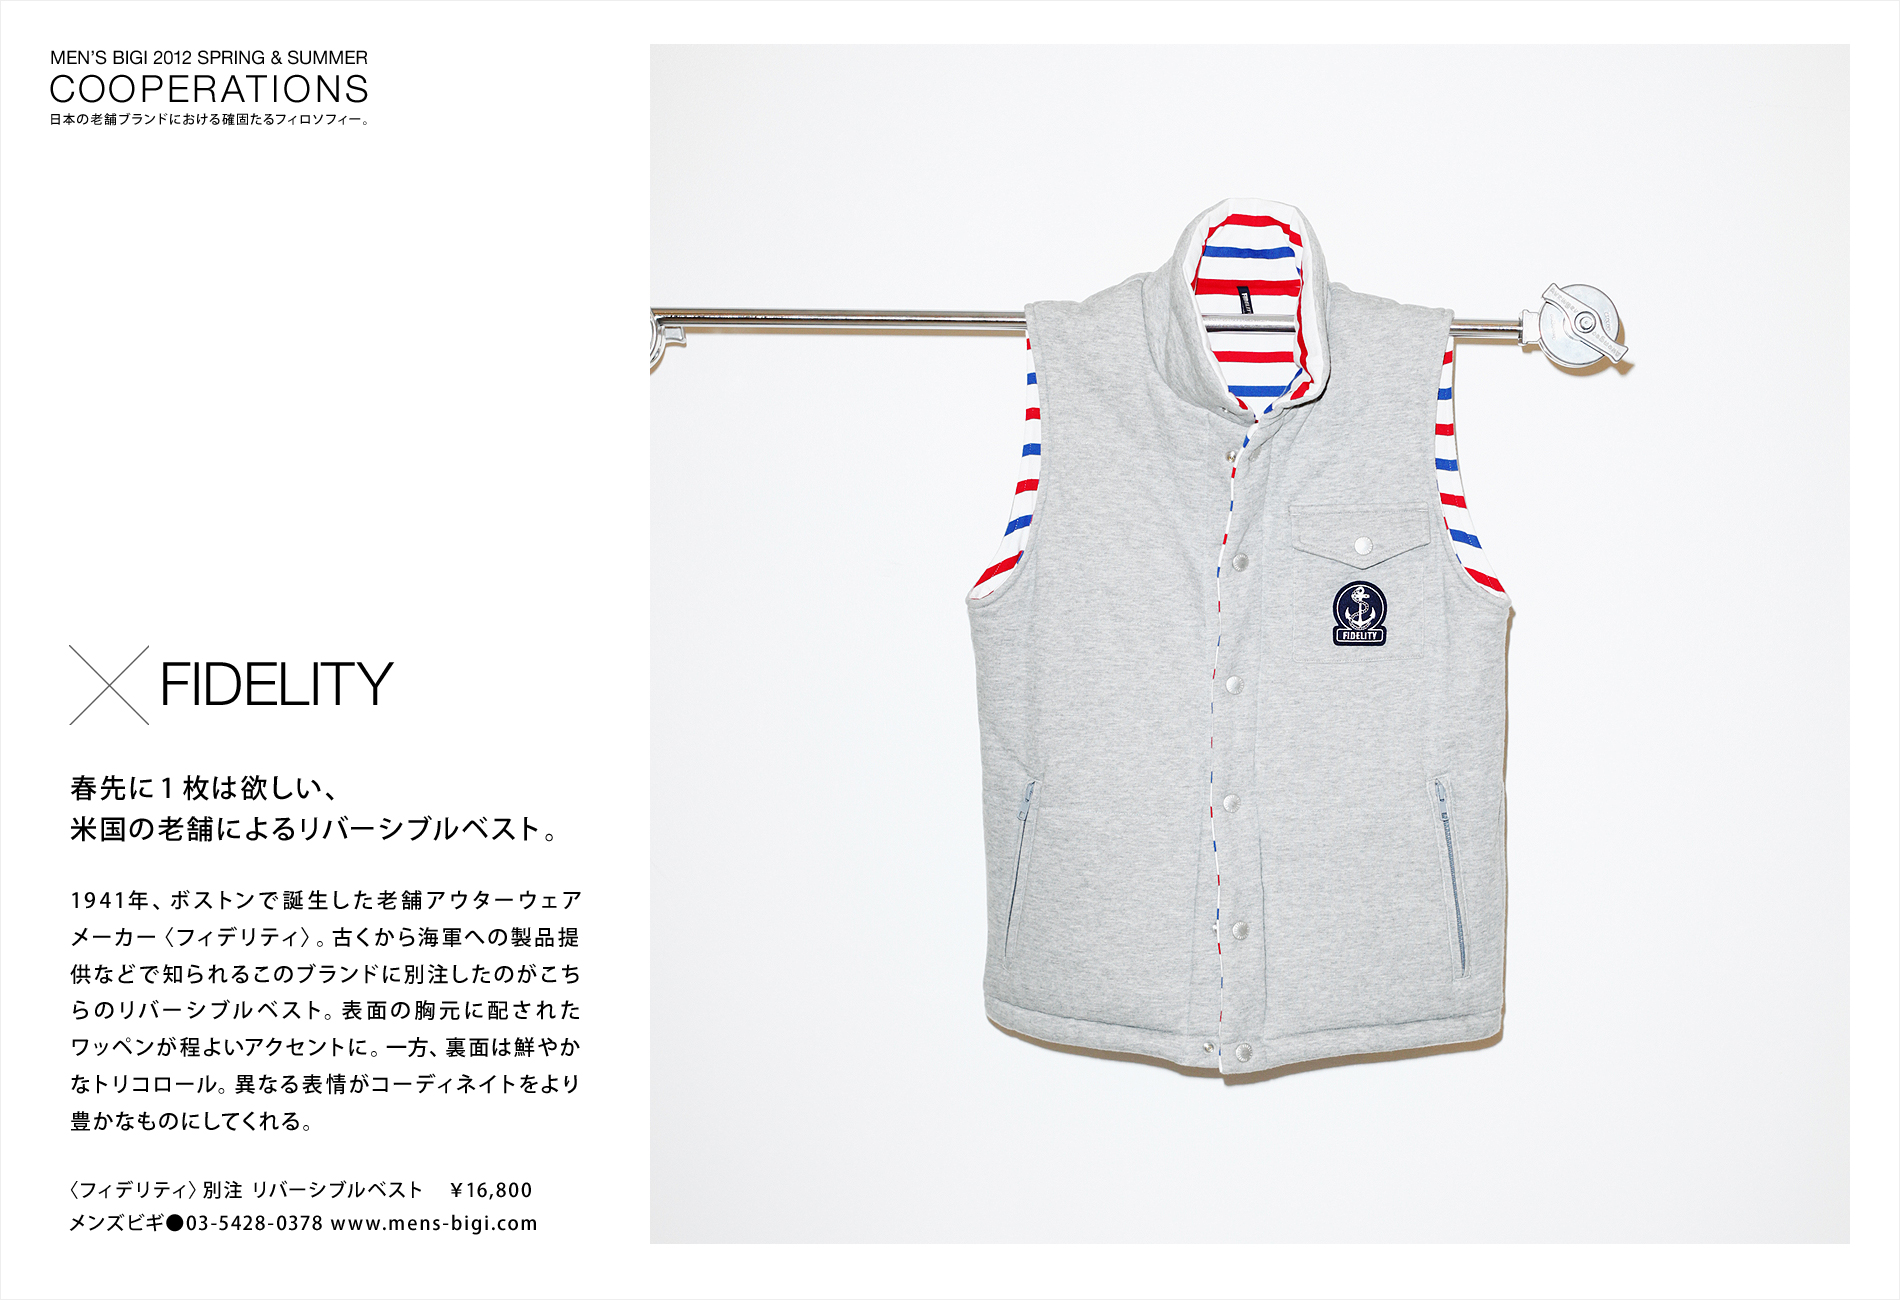 日本の老舗ブランドにおける確固たるフィロソフィー Page3 Feature Houyhnhnm フイナム